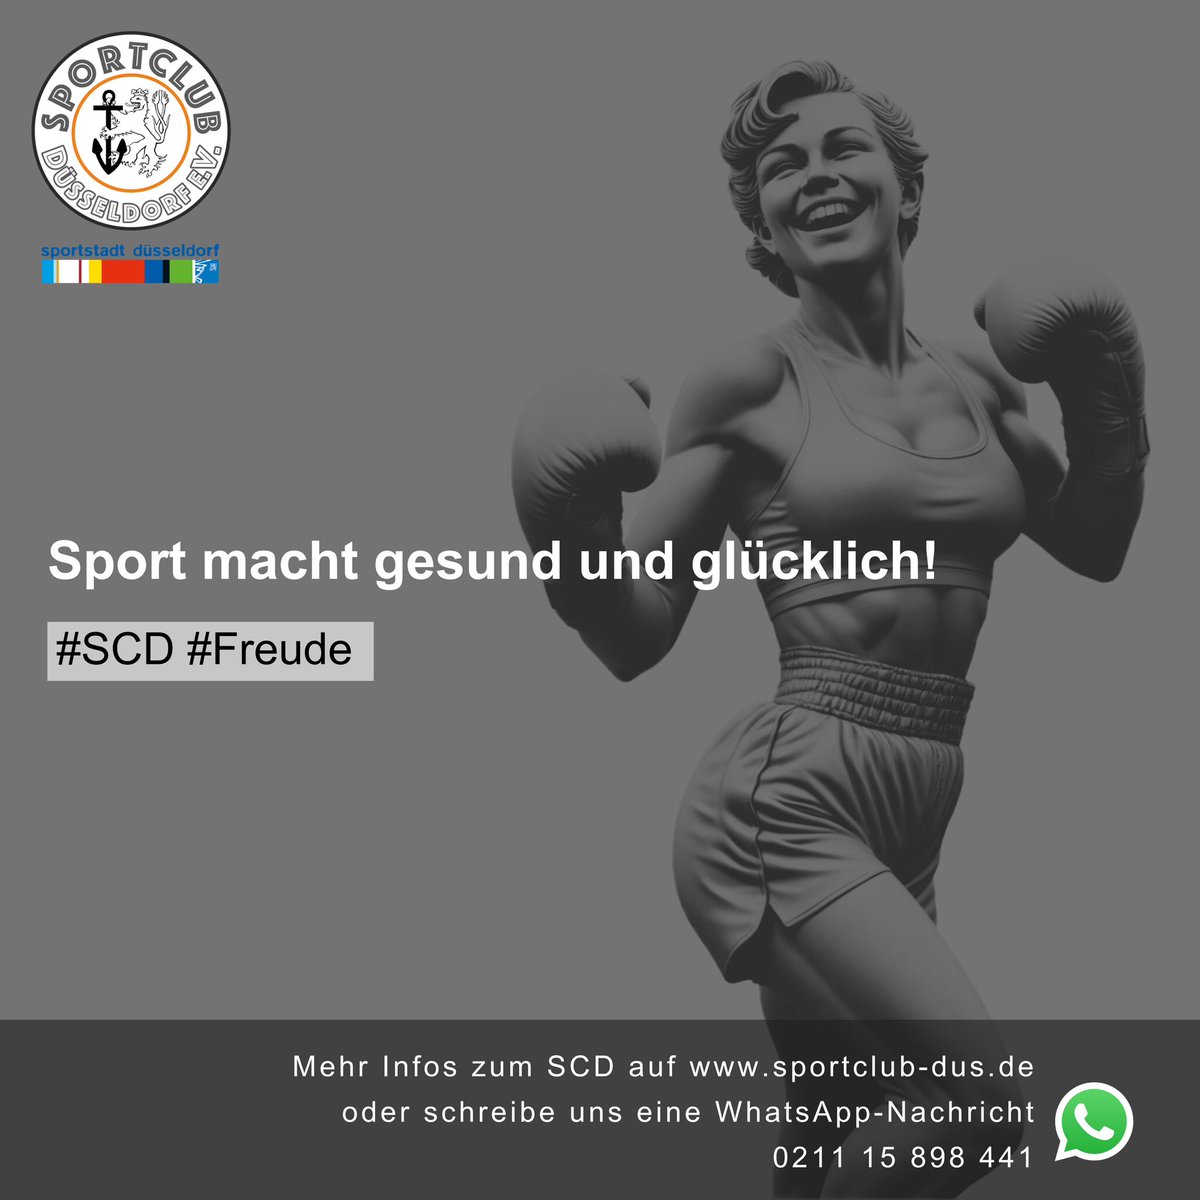 Ob ein schneller Lauf, eine CrossFunc-Session oder ein energiegeladenes Boxtraining – jede Form von Aktivität verbessert nicht nur unsere körperliche Gesundheit, sondern auch unser mentales Wohlbefinden.
#SportIstGlück #BewegungMachtFreude #StarkWerden #Verein #Düsseldorf